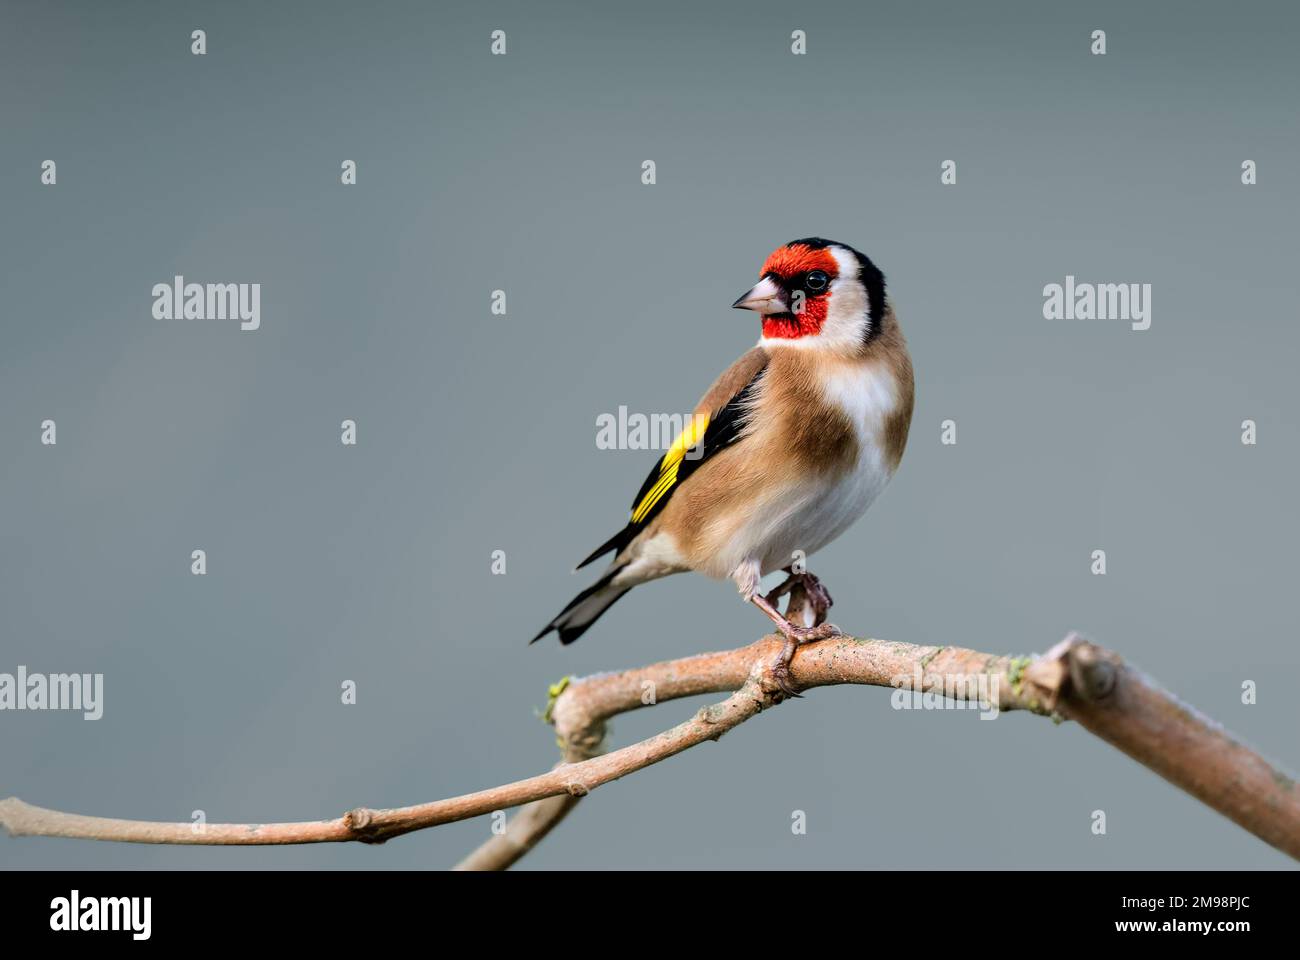 Nahaufnahme eines einzelnen Goldfinchs, der auf einem Ast mit glattem, sauberem Hintergrund steht Stockfoto